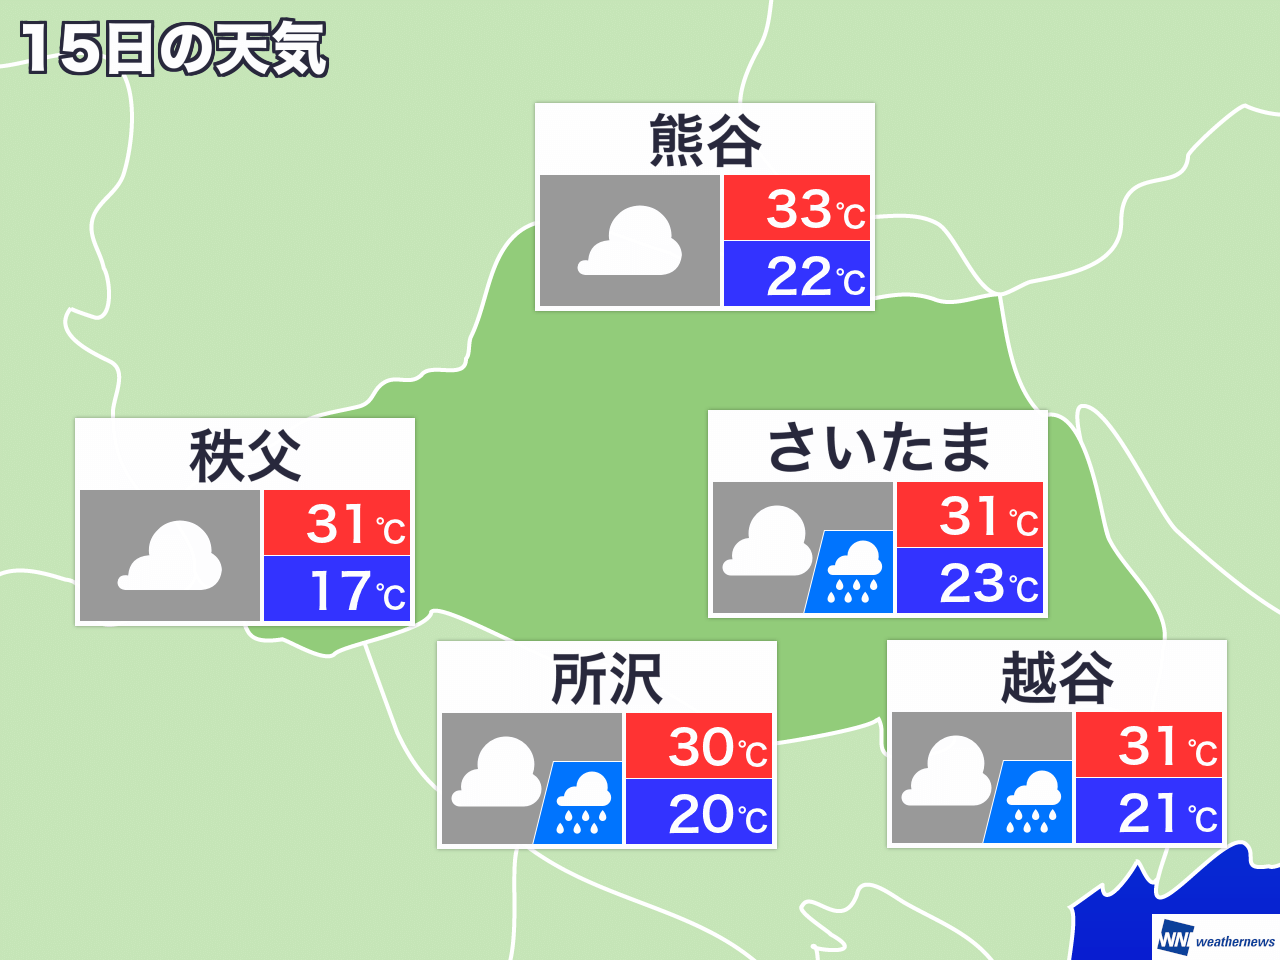 8月23日 月 埼玉県の今日の天気 ウェザーニュース